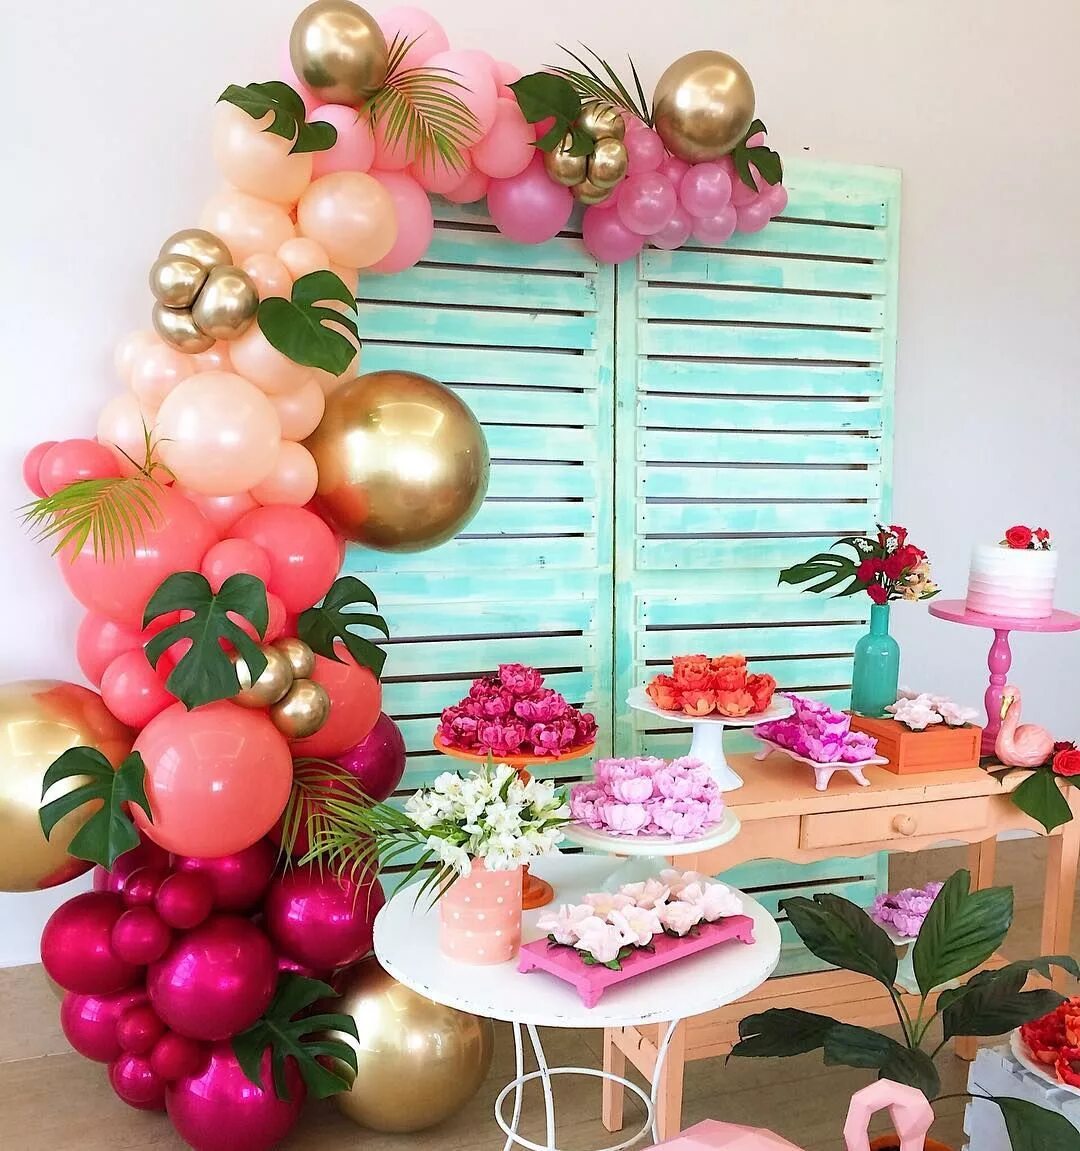 Кухня с шарами. Фотозоны из шаров в тропическом стиле. Шары в тропическом стиле. Фотозона тропики из шаров. Гавайская вечеринка фотозона.